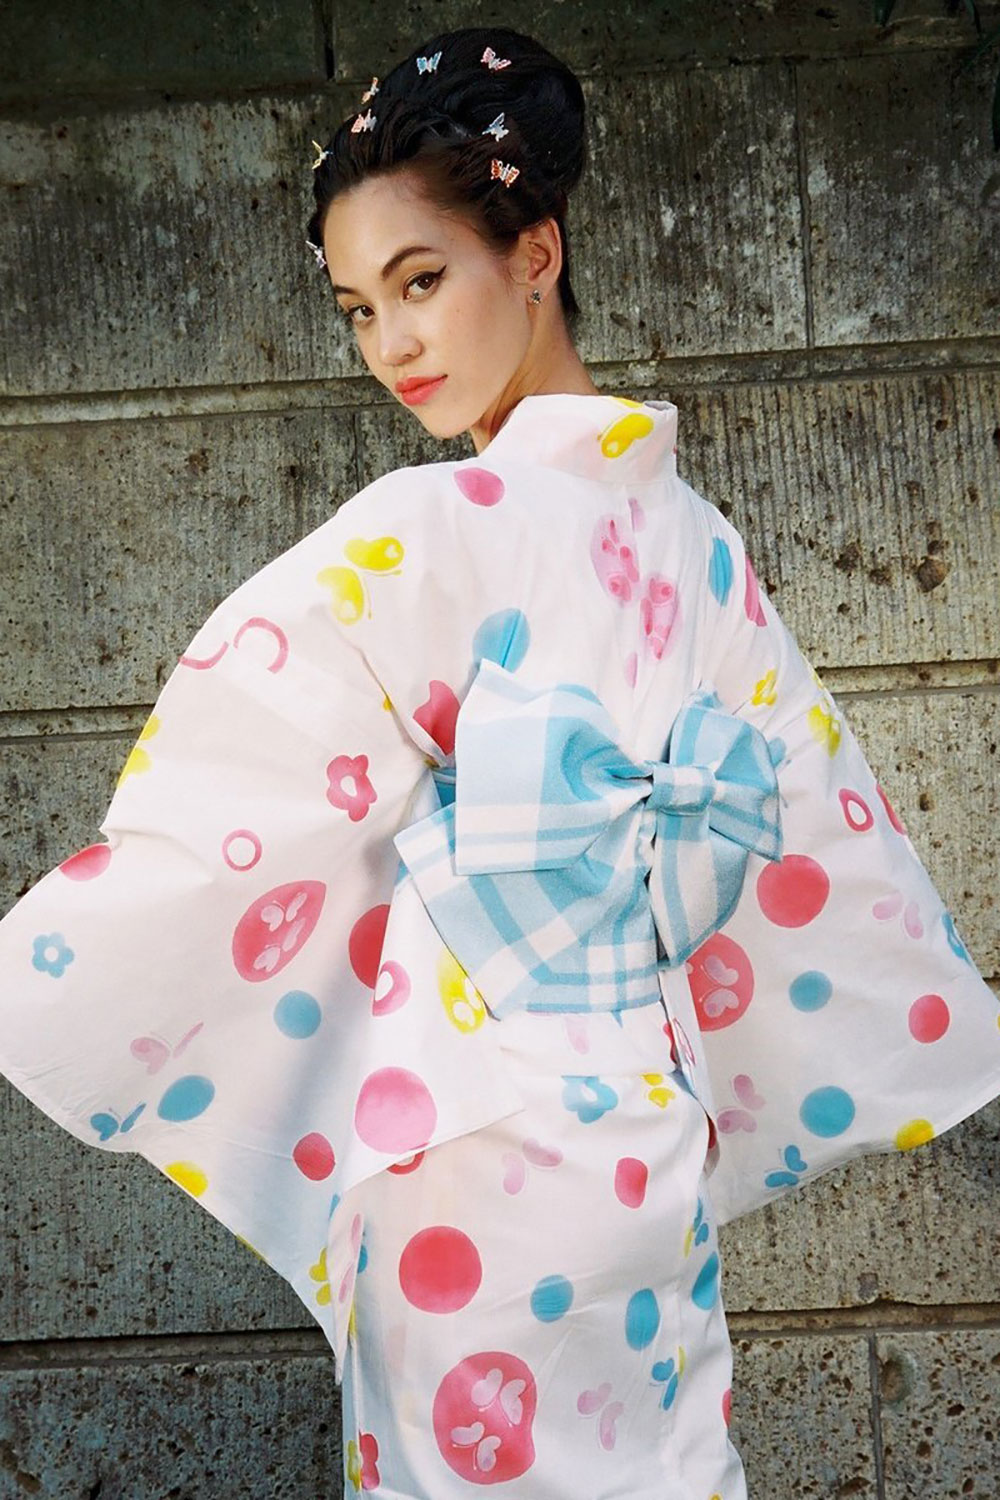 水原希子品牌 official kiko 发布日式浴衣系列